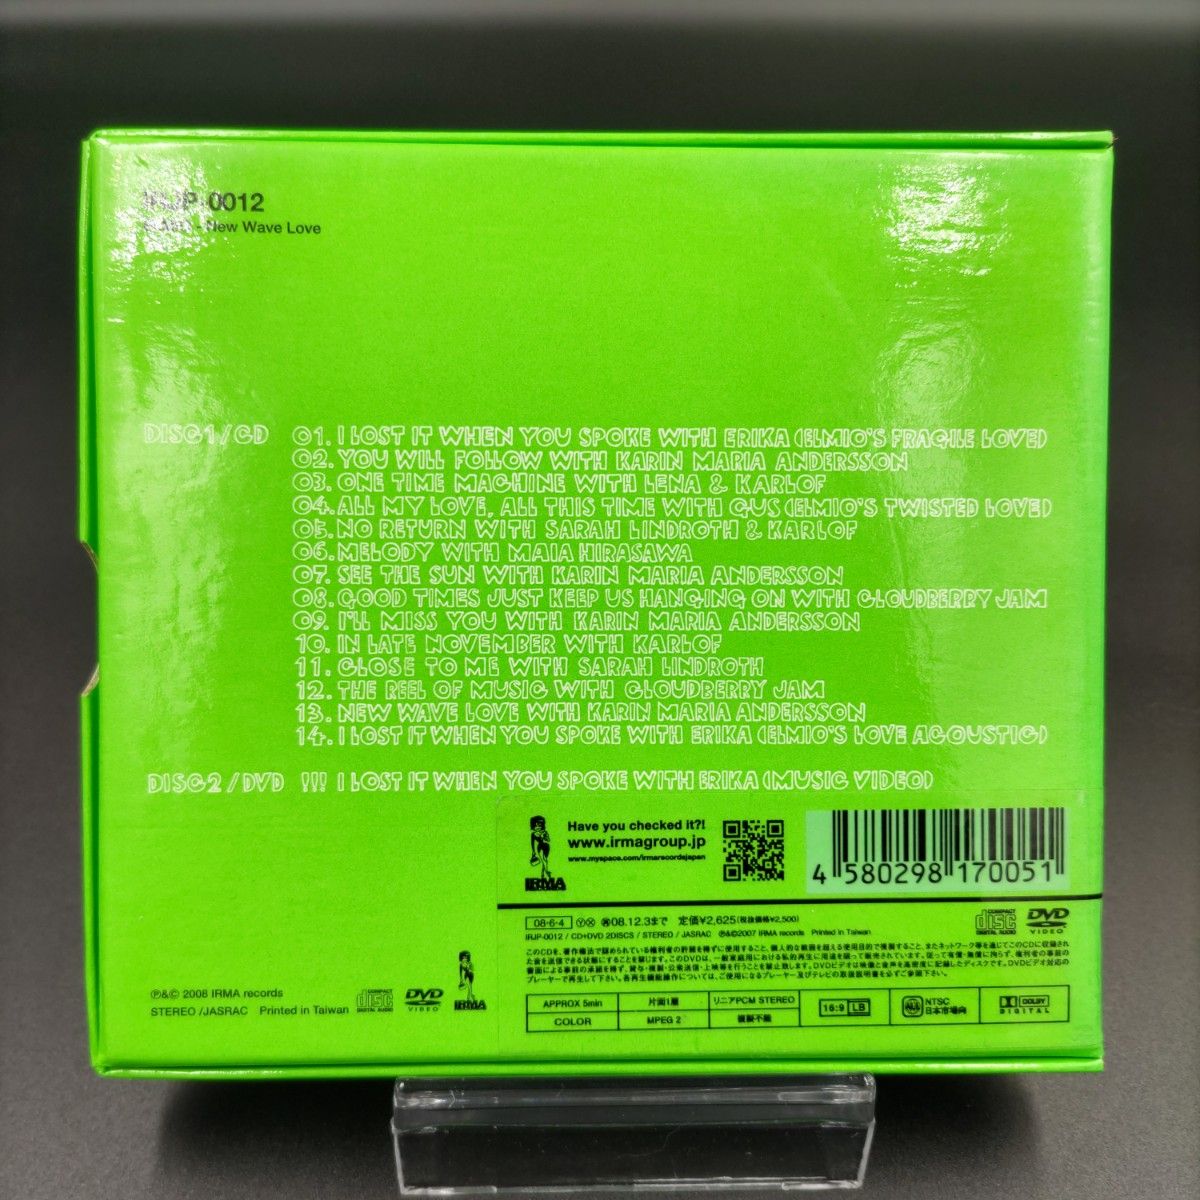 【中古】ELMIO New Wave Love CD スペシャルボックス